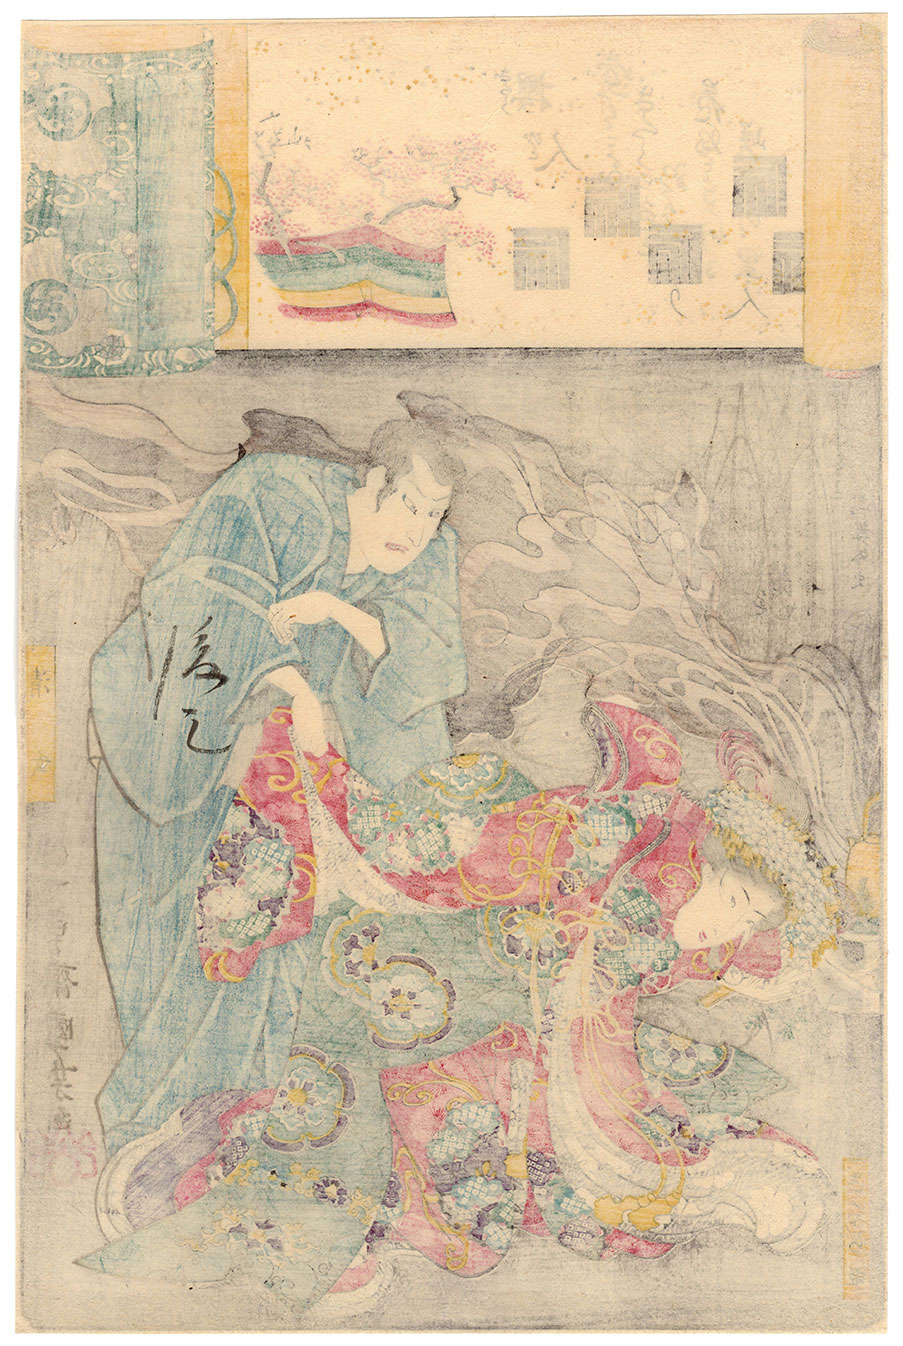 SEIGEN AND PRINCESS SAKURA (Utagawa Kuniyoshi) – 美和 Miwa 